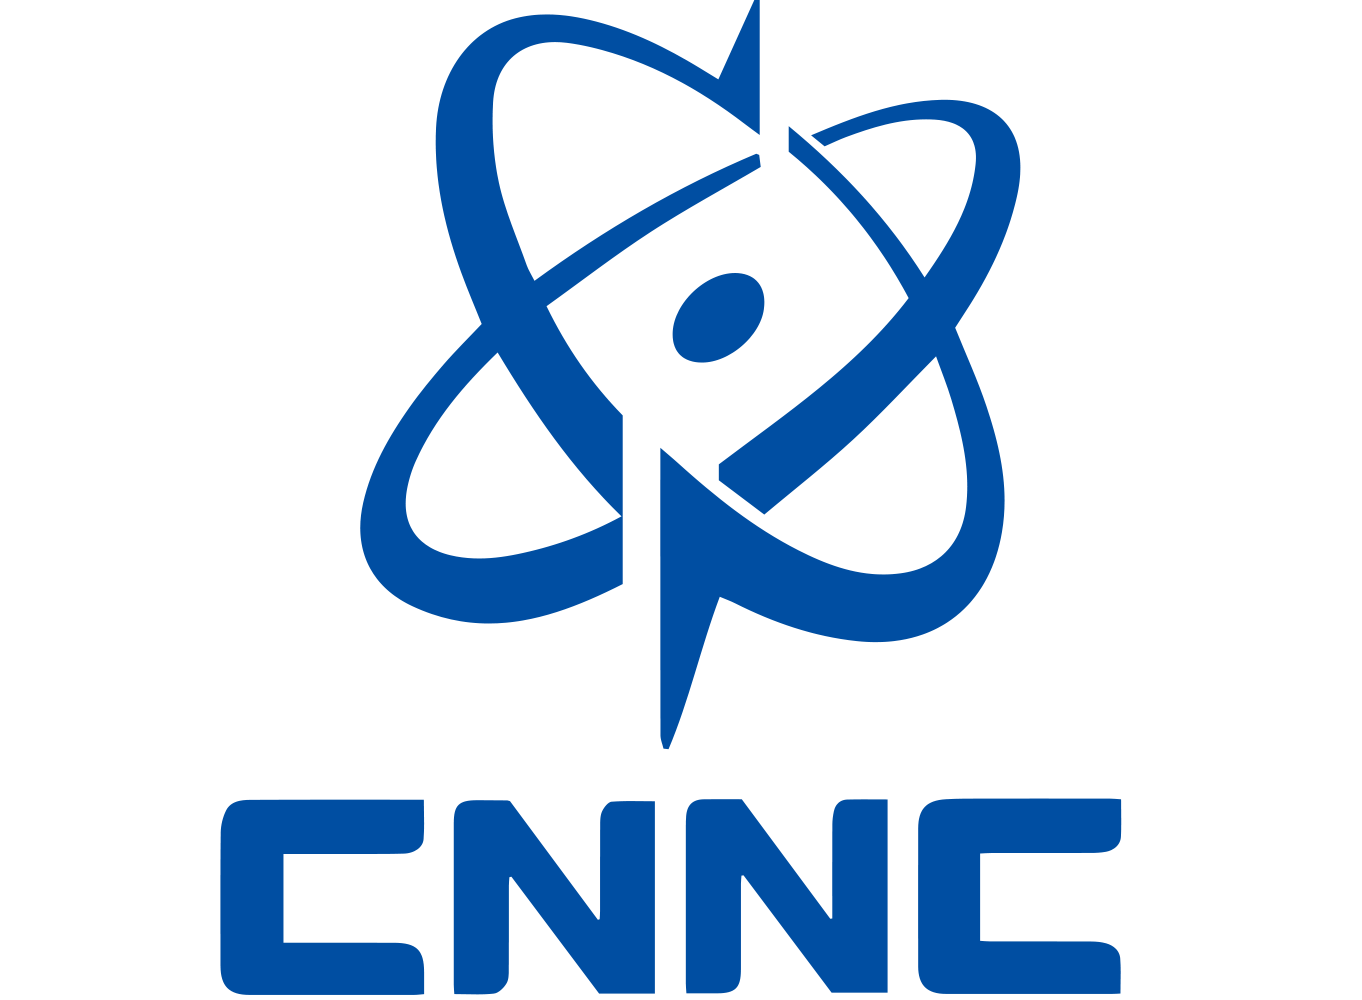 CNNC logo